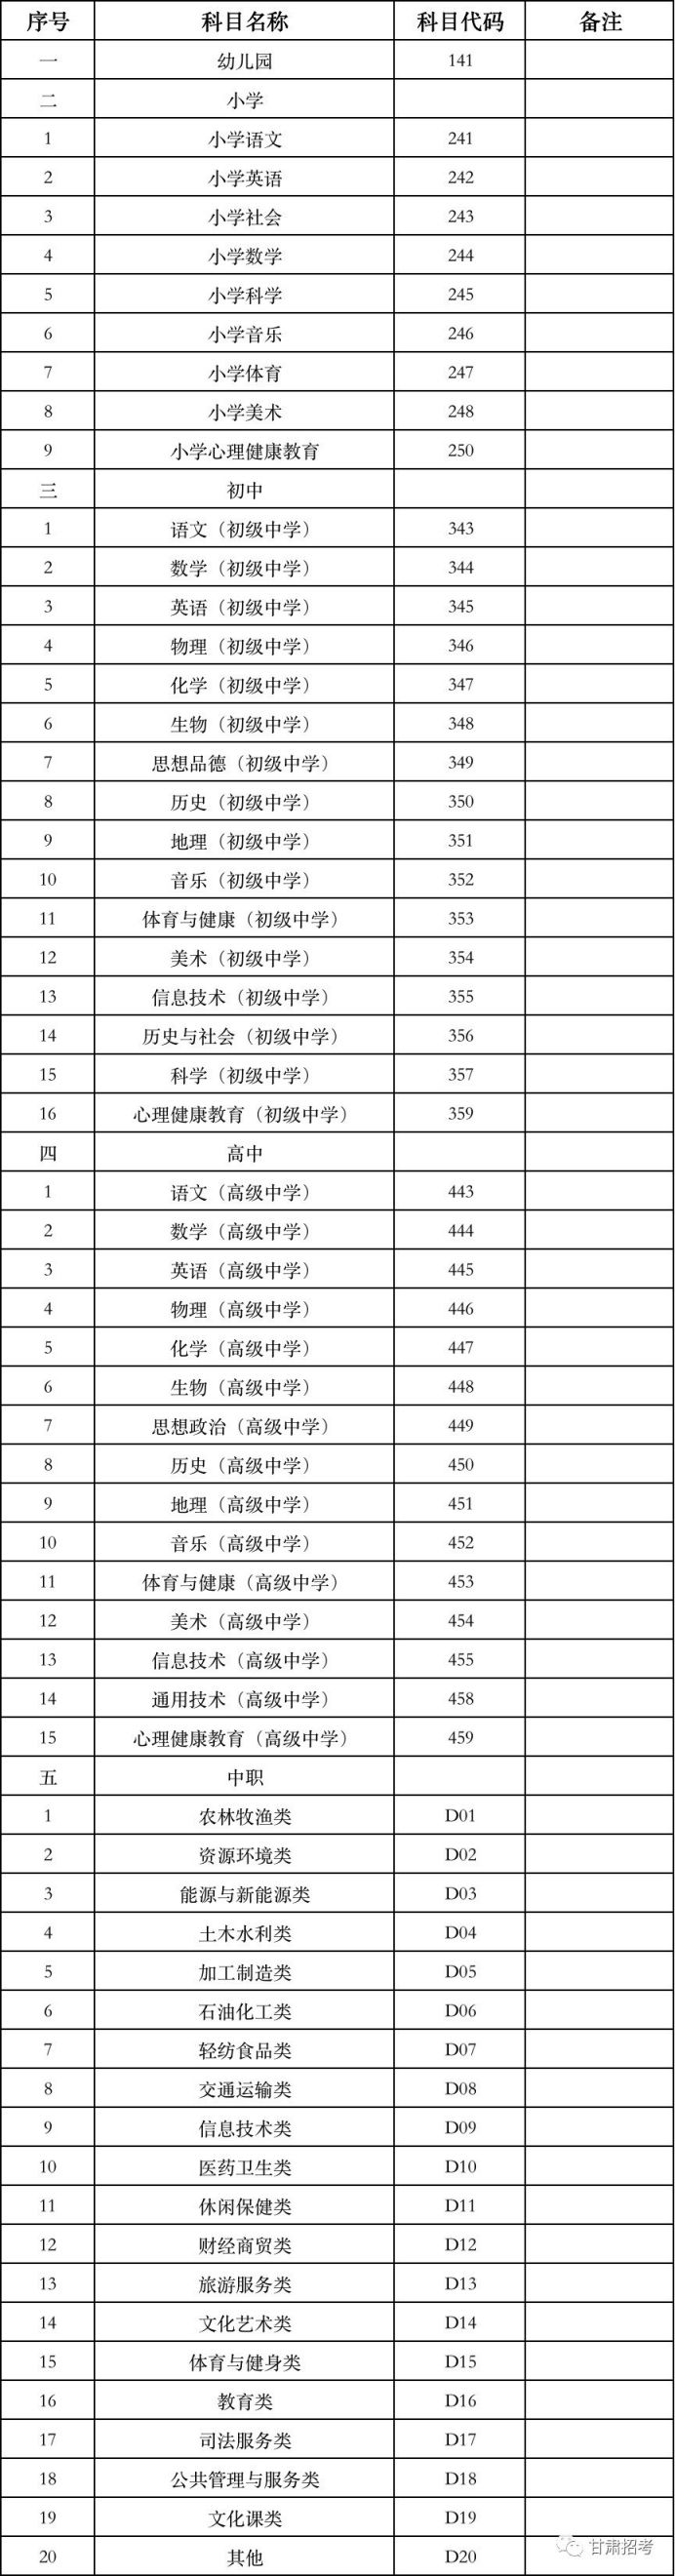 甘肃省2020年下半年中小学教师资格考试面试报名通知